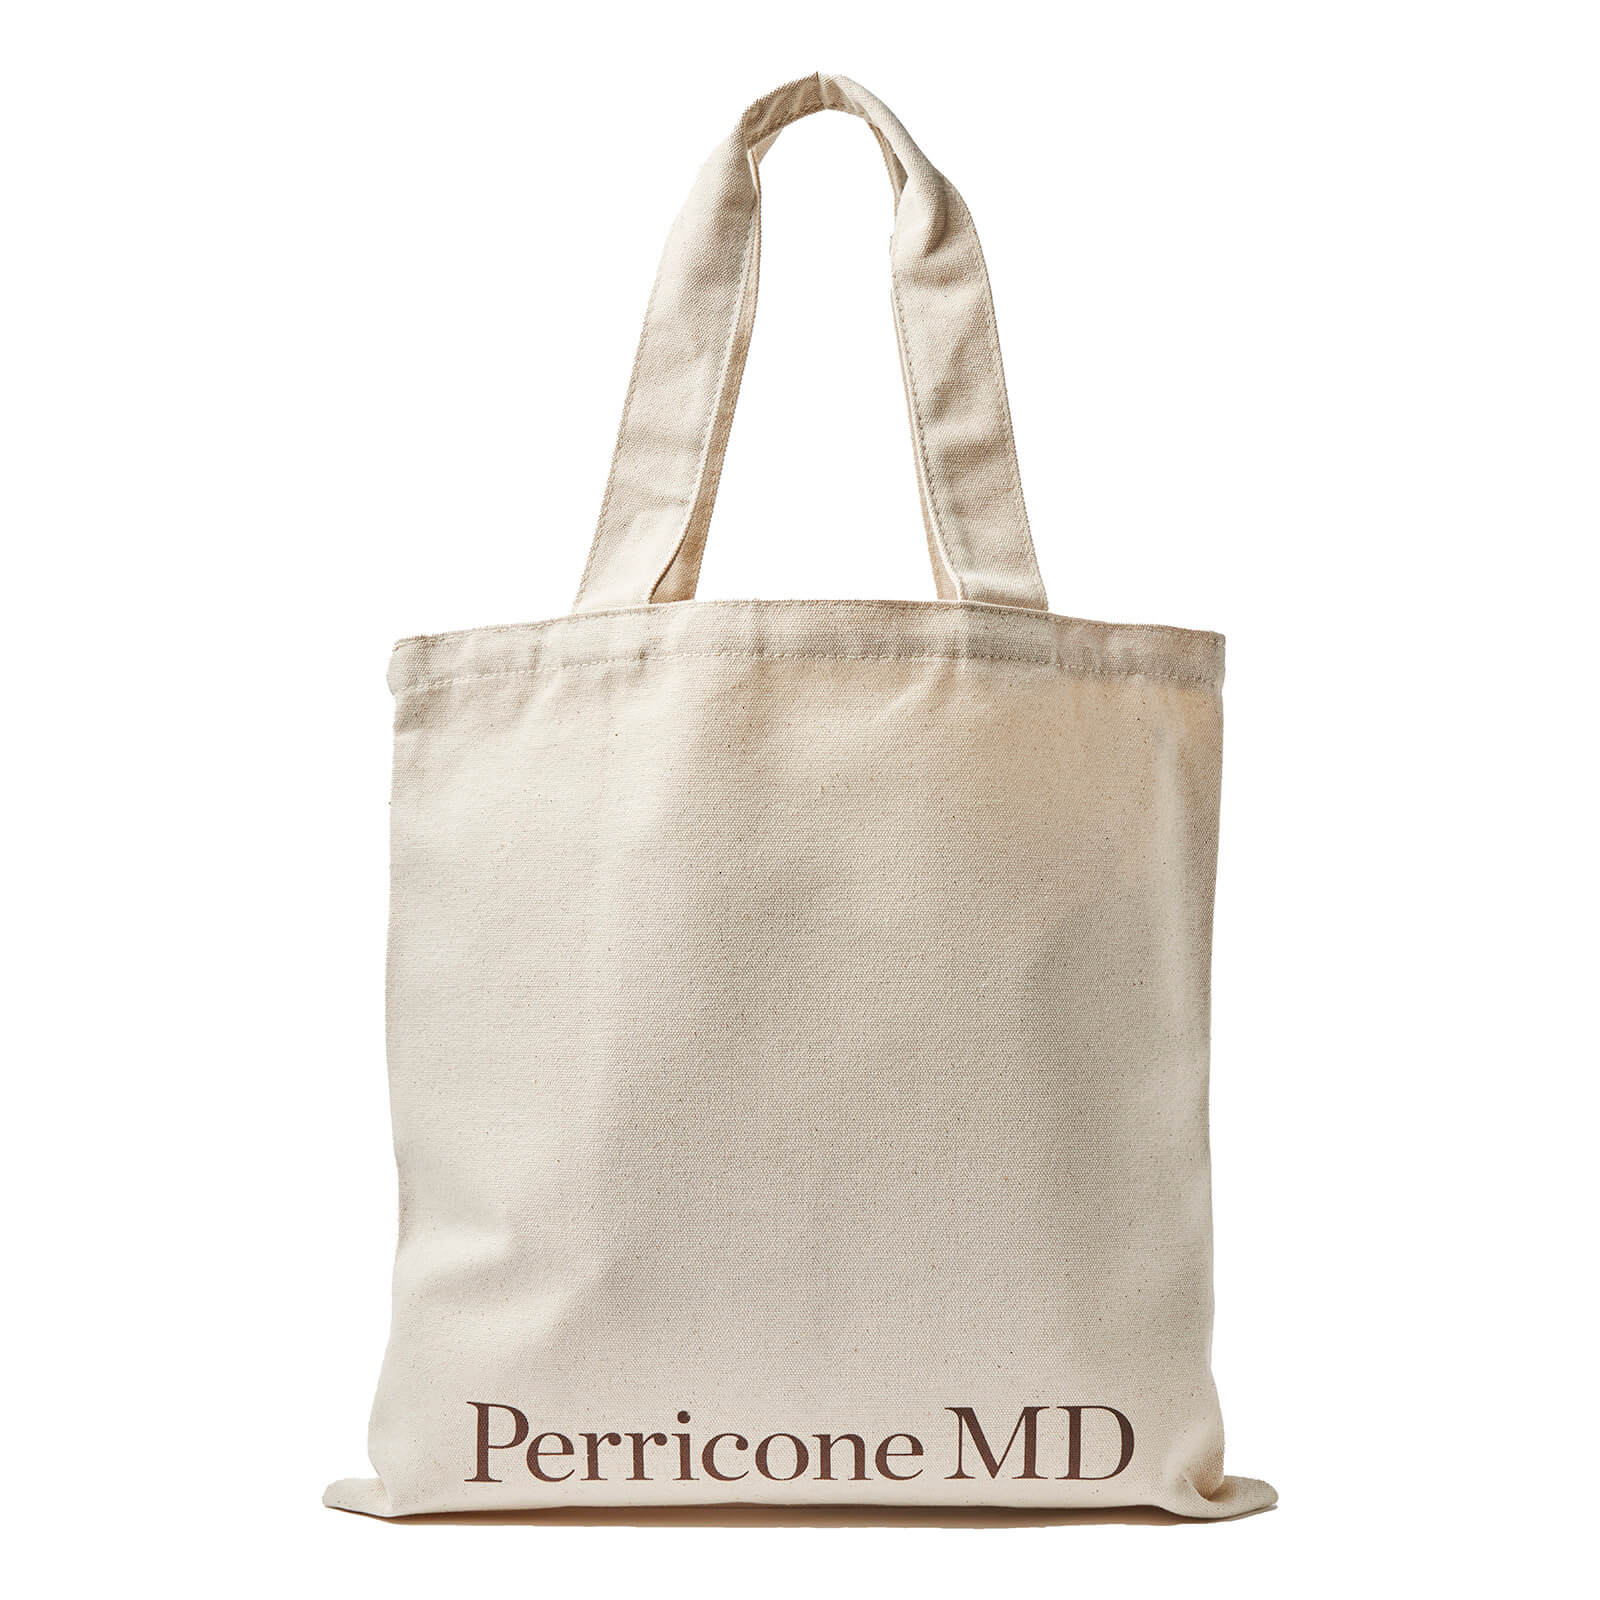 Perricone Md Cotton Canvas Tote Bag